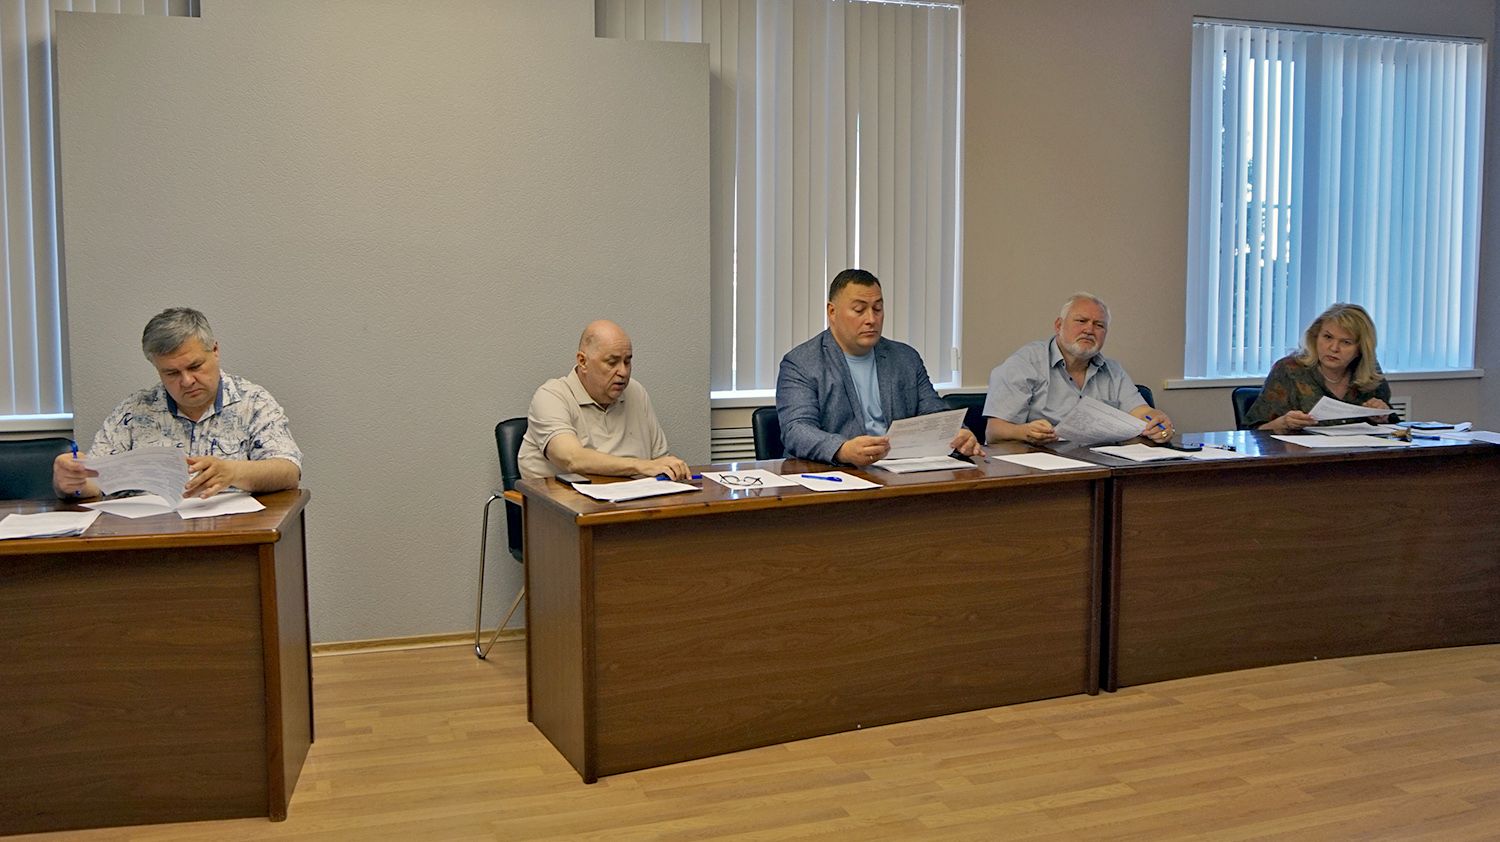 Заседание постоянной комиссии (видео)